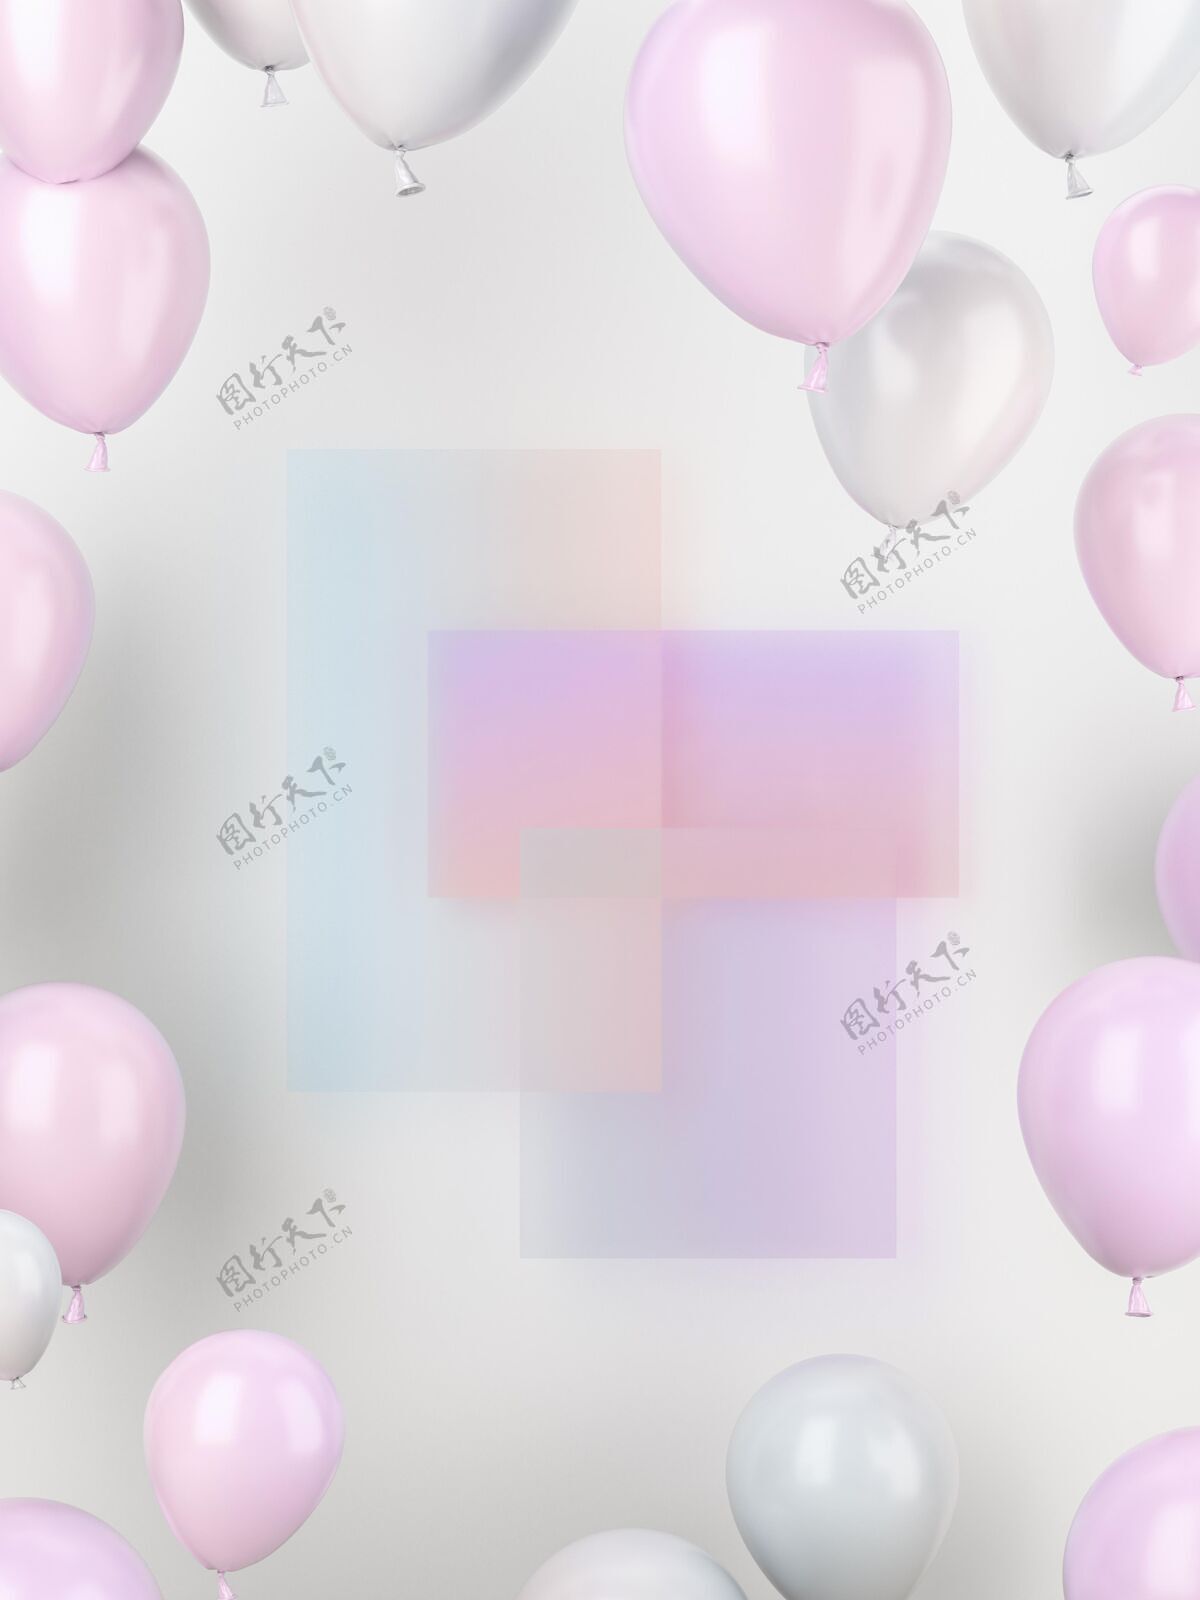 垂直粉色和白色的气球庆祝聚会气球